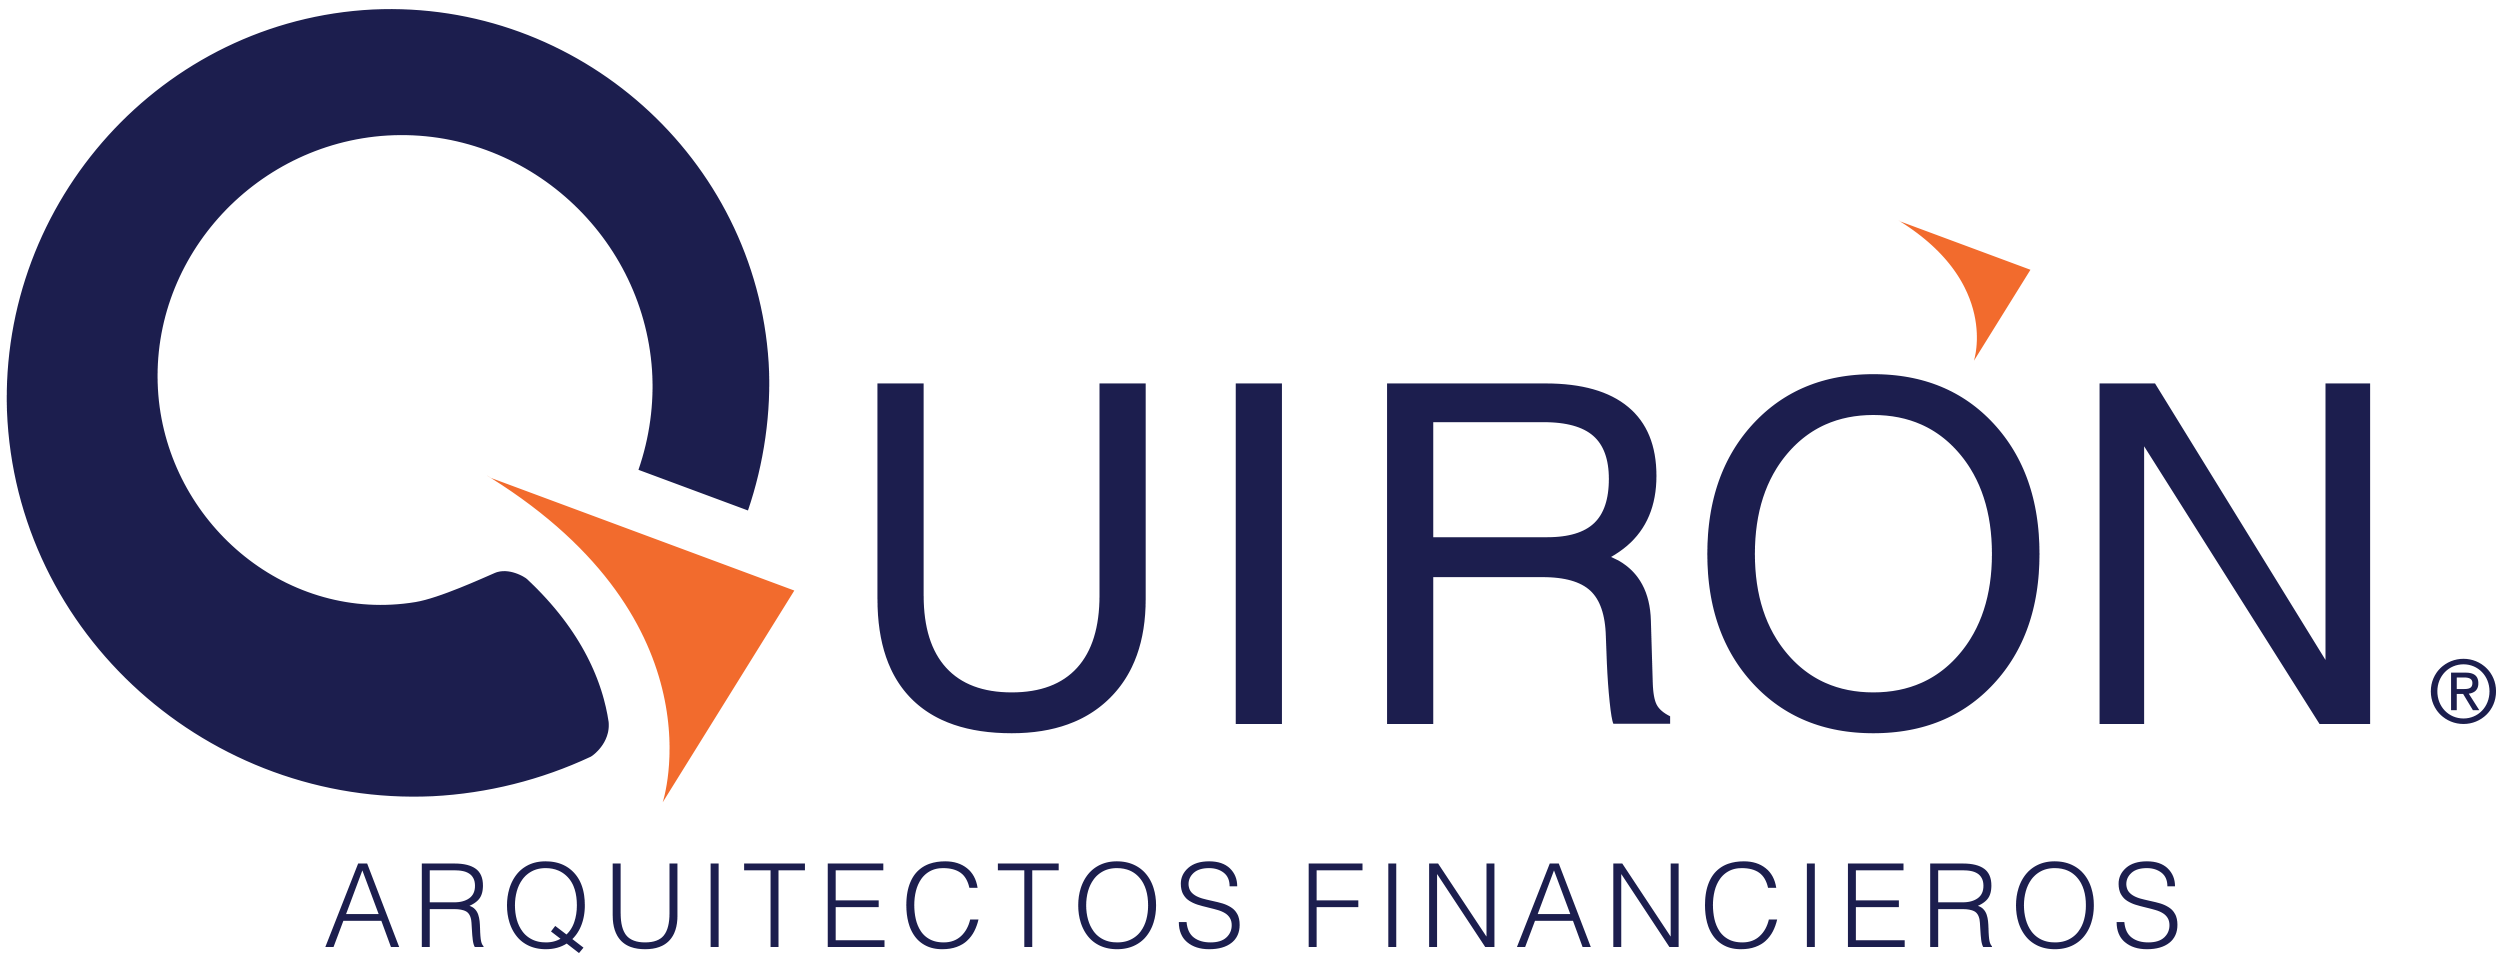 Quirón Group Arquitectos Financieros